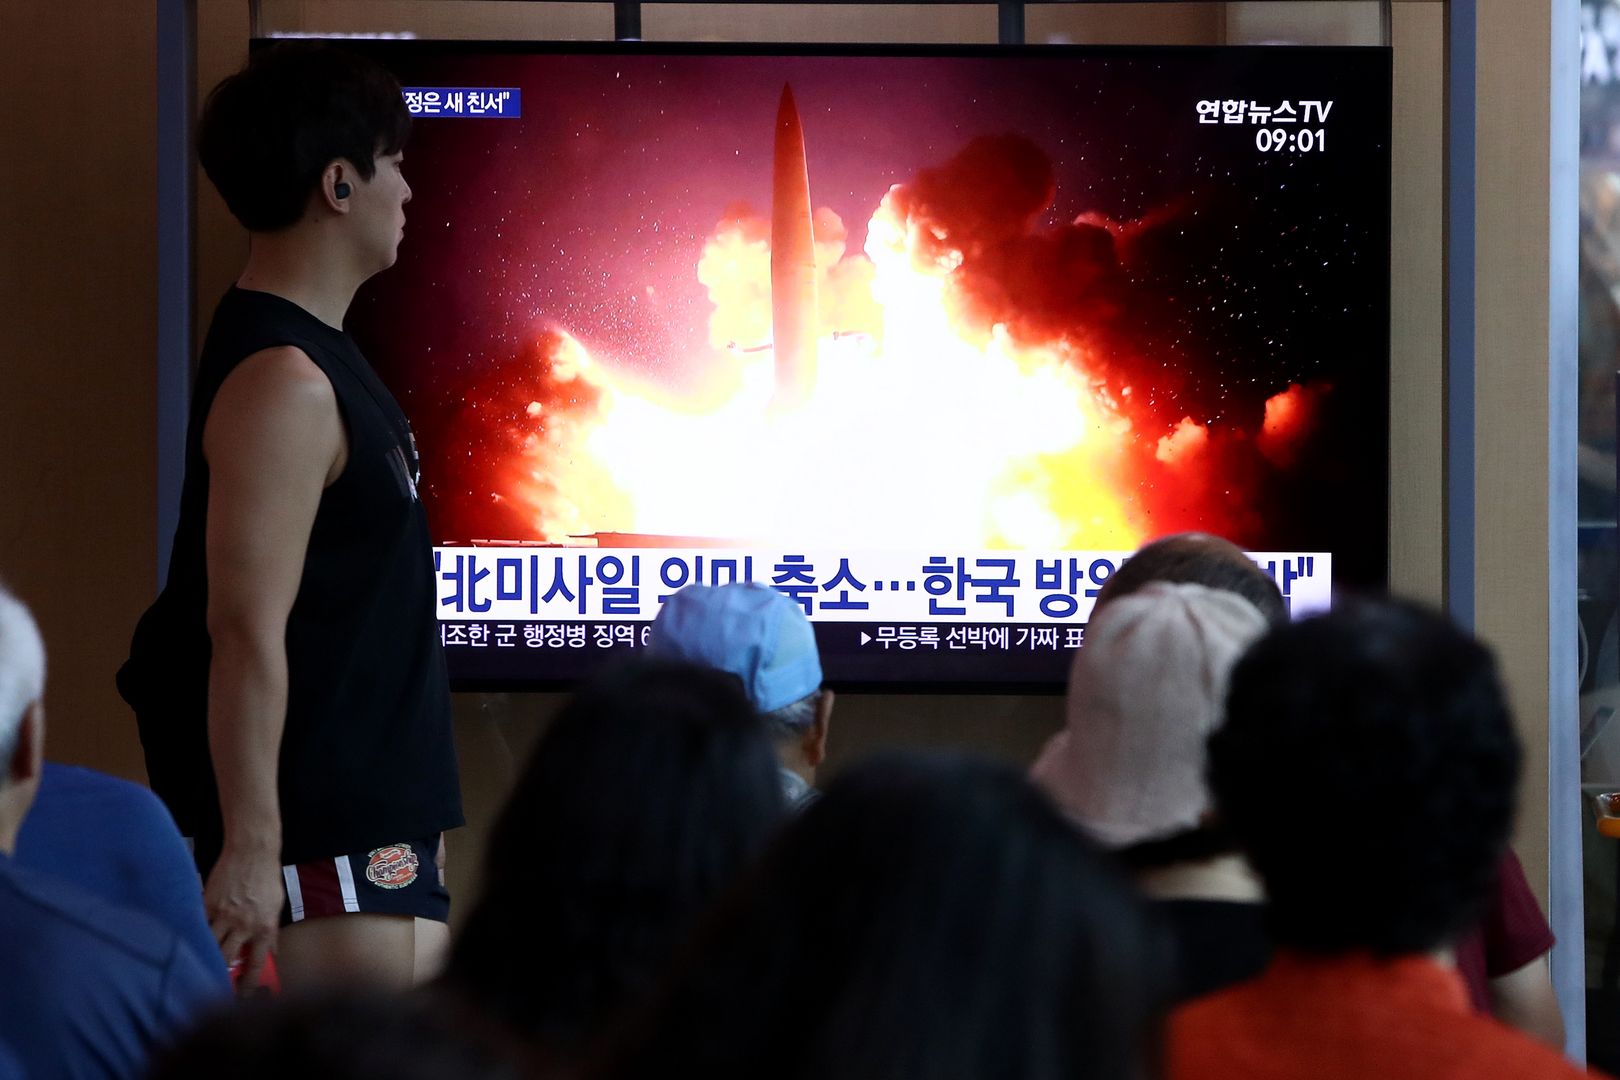 Korea Północna planuje wystrzelić rakietę. Dalej nie wiadomo, w jakim stanie jest Kim Dzong Un.